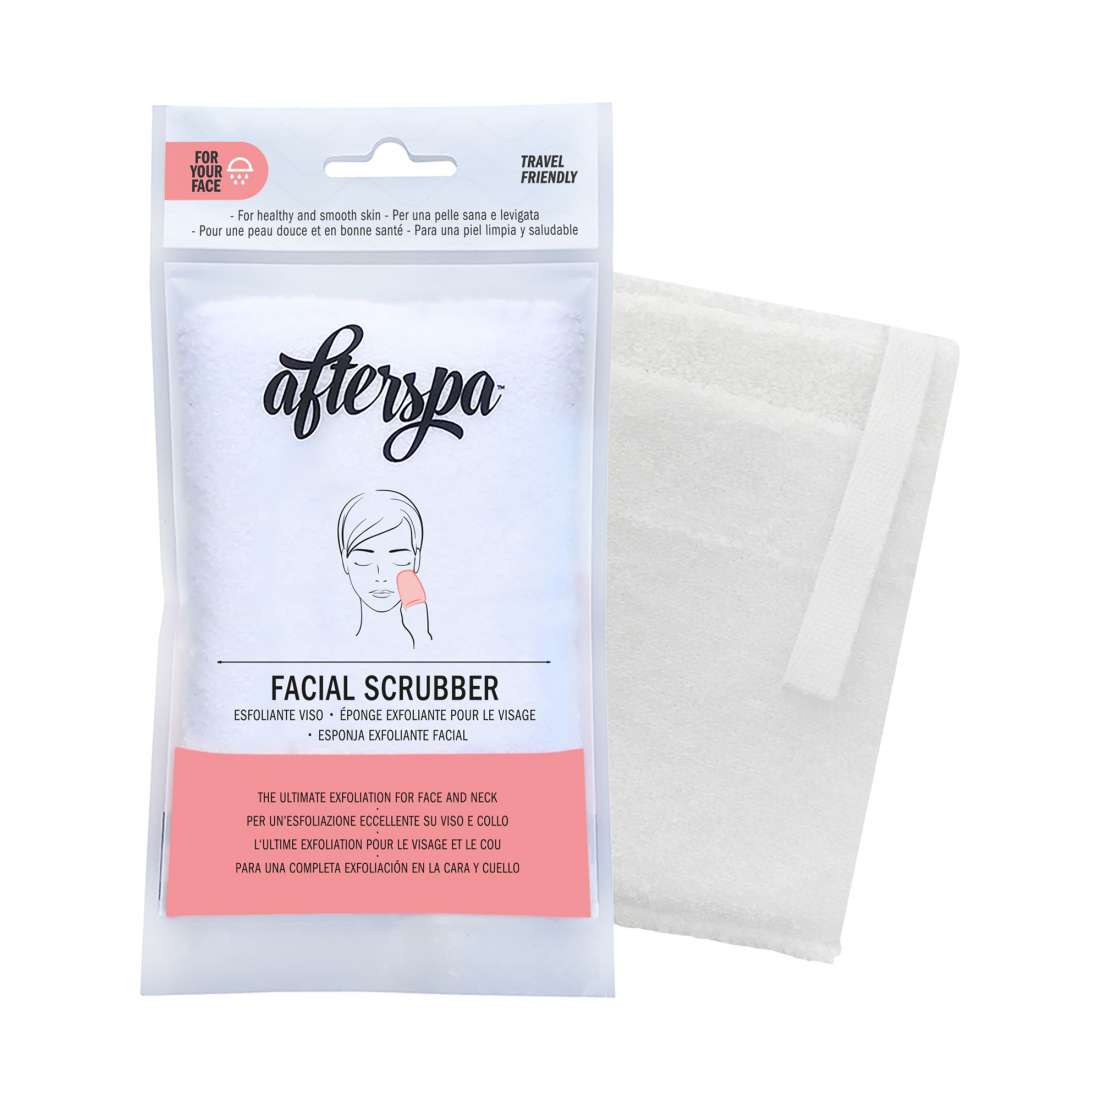 'Bath & Shower Micro' Facial scrubber